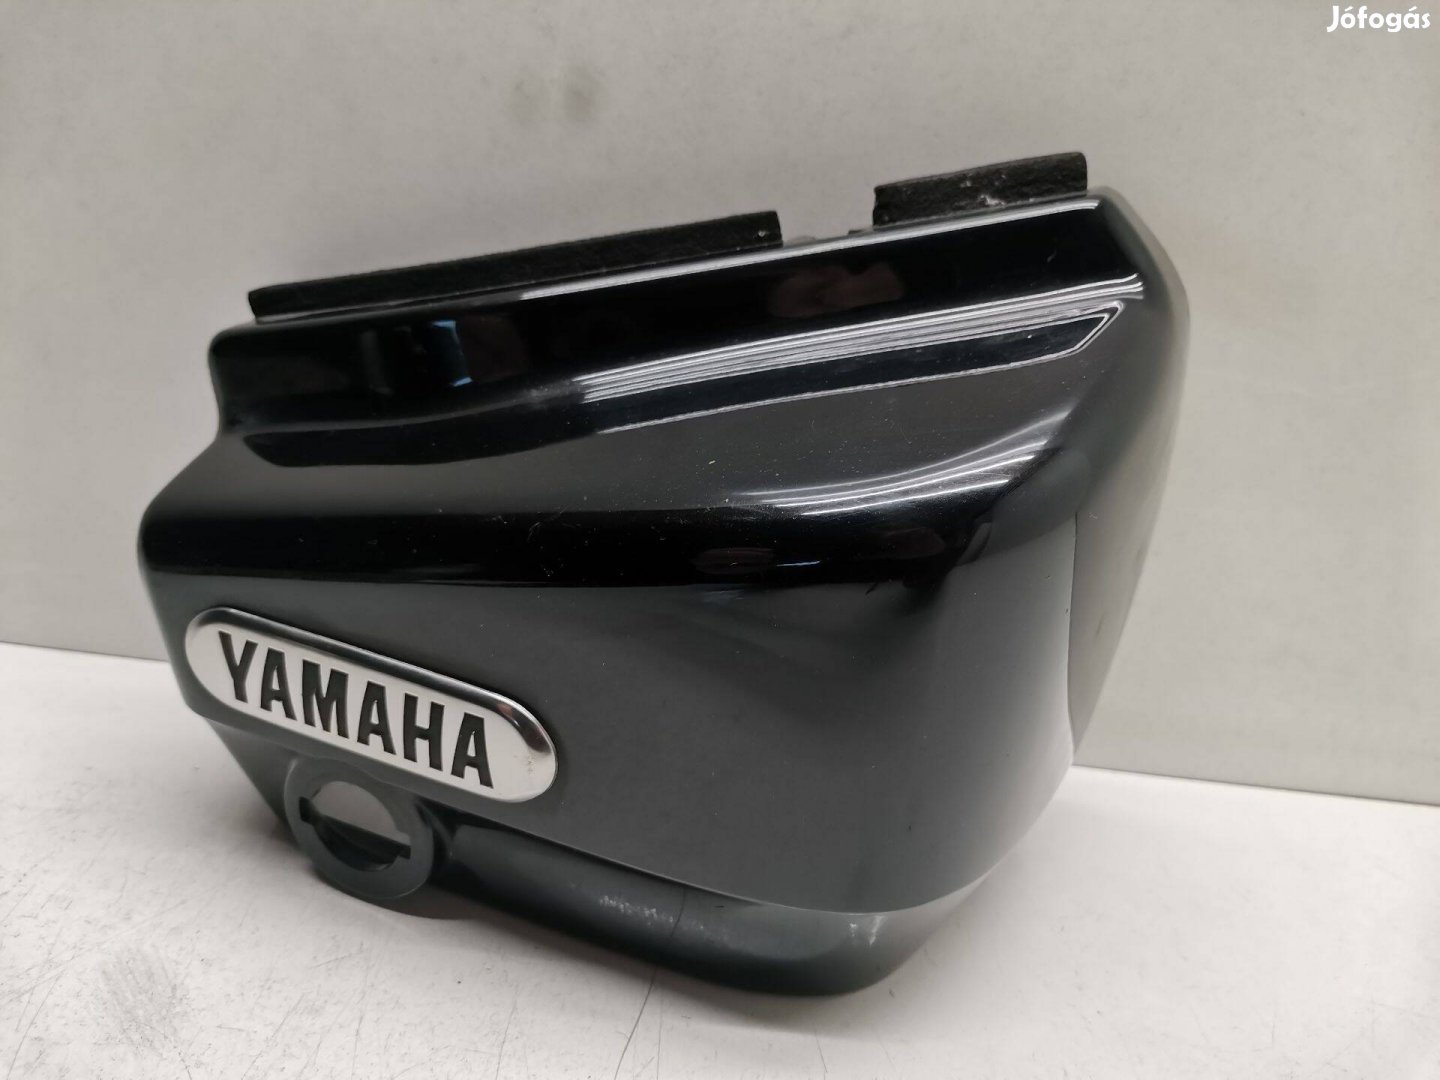 Yamaha Xvs 250 Dragstar (2002) ülés alatti idom (jobb)